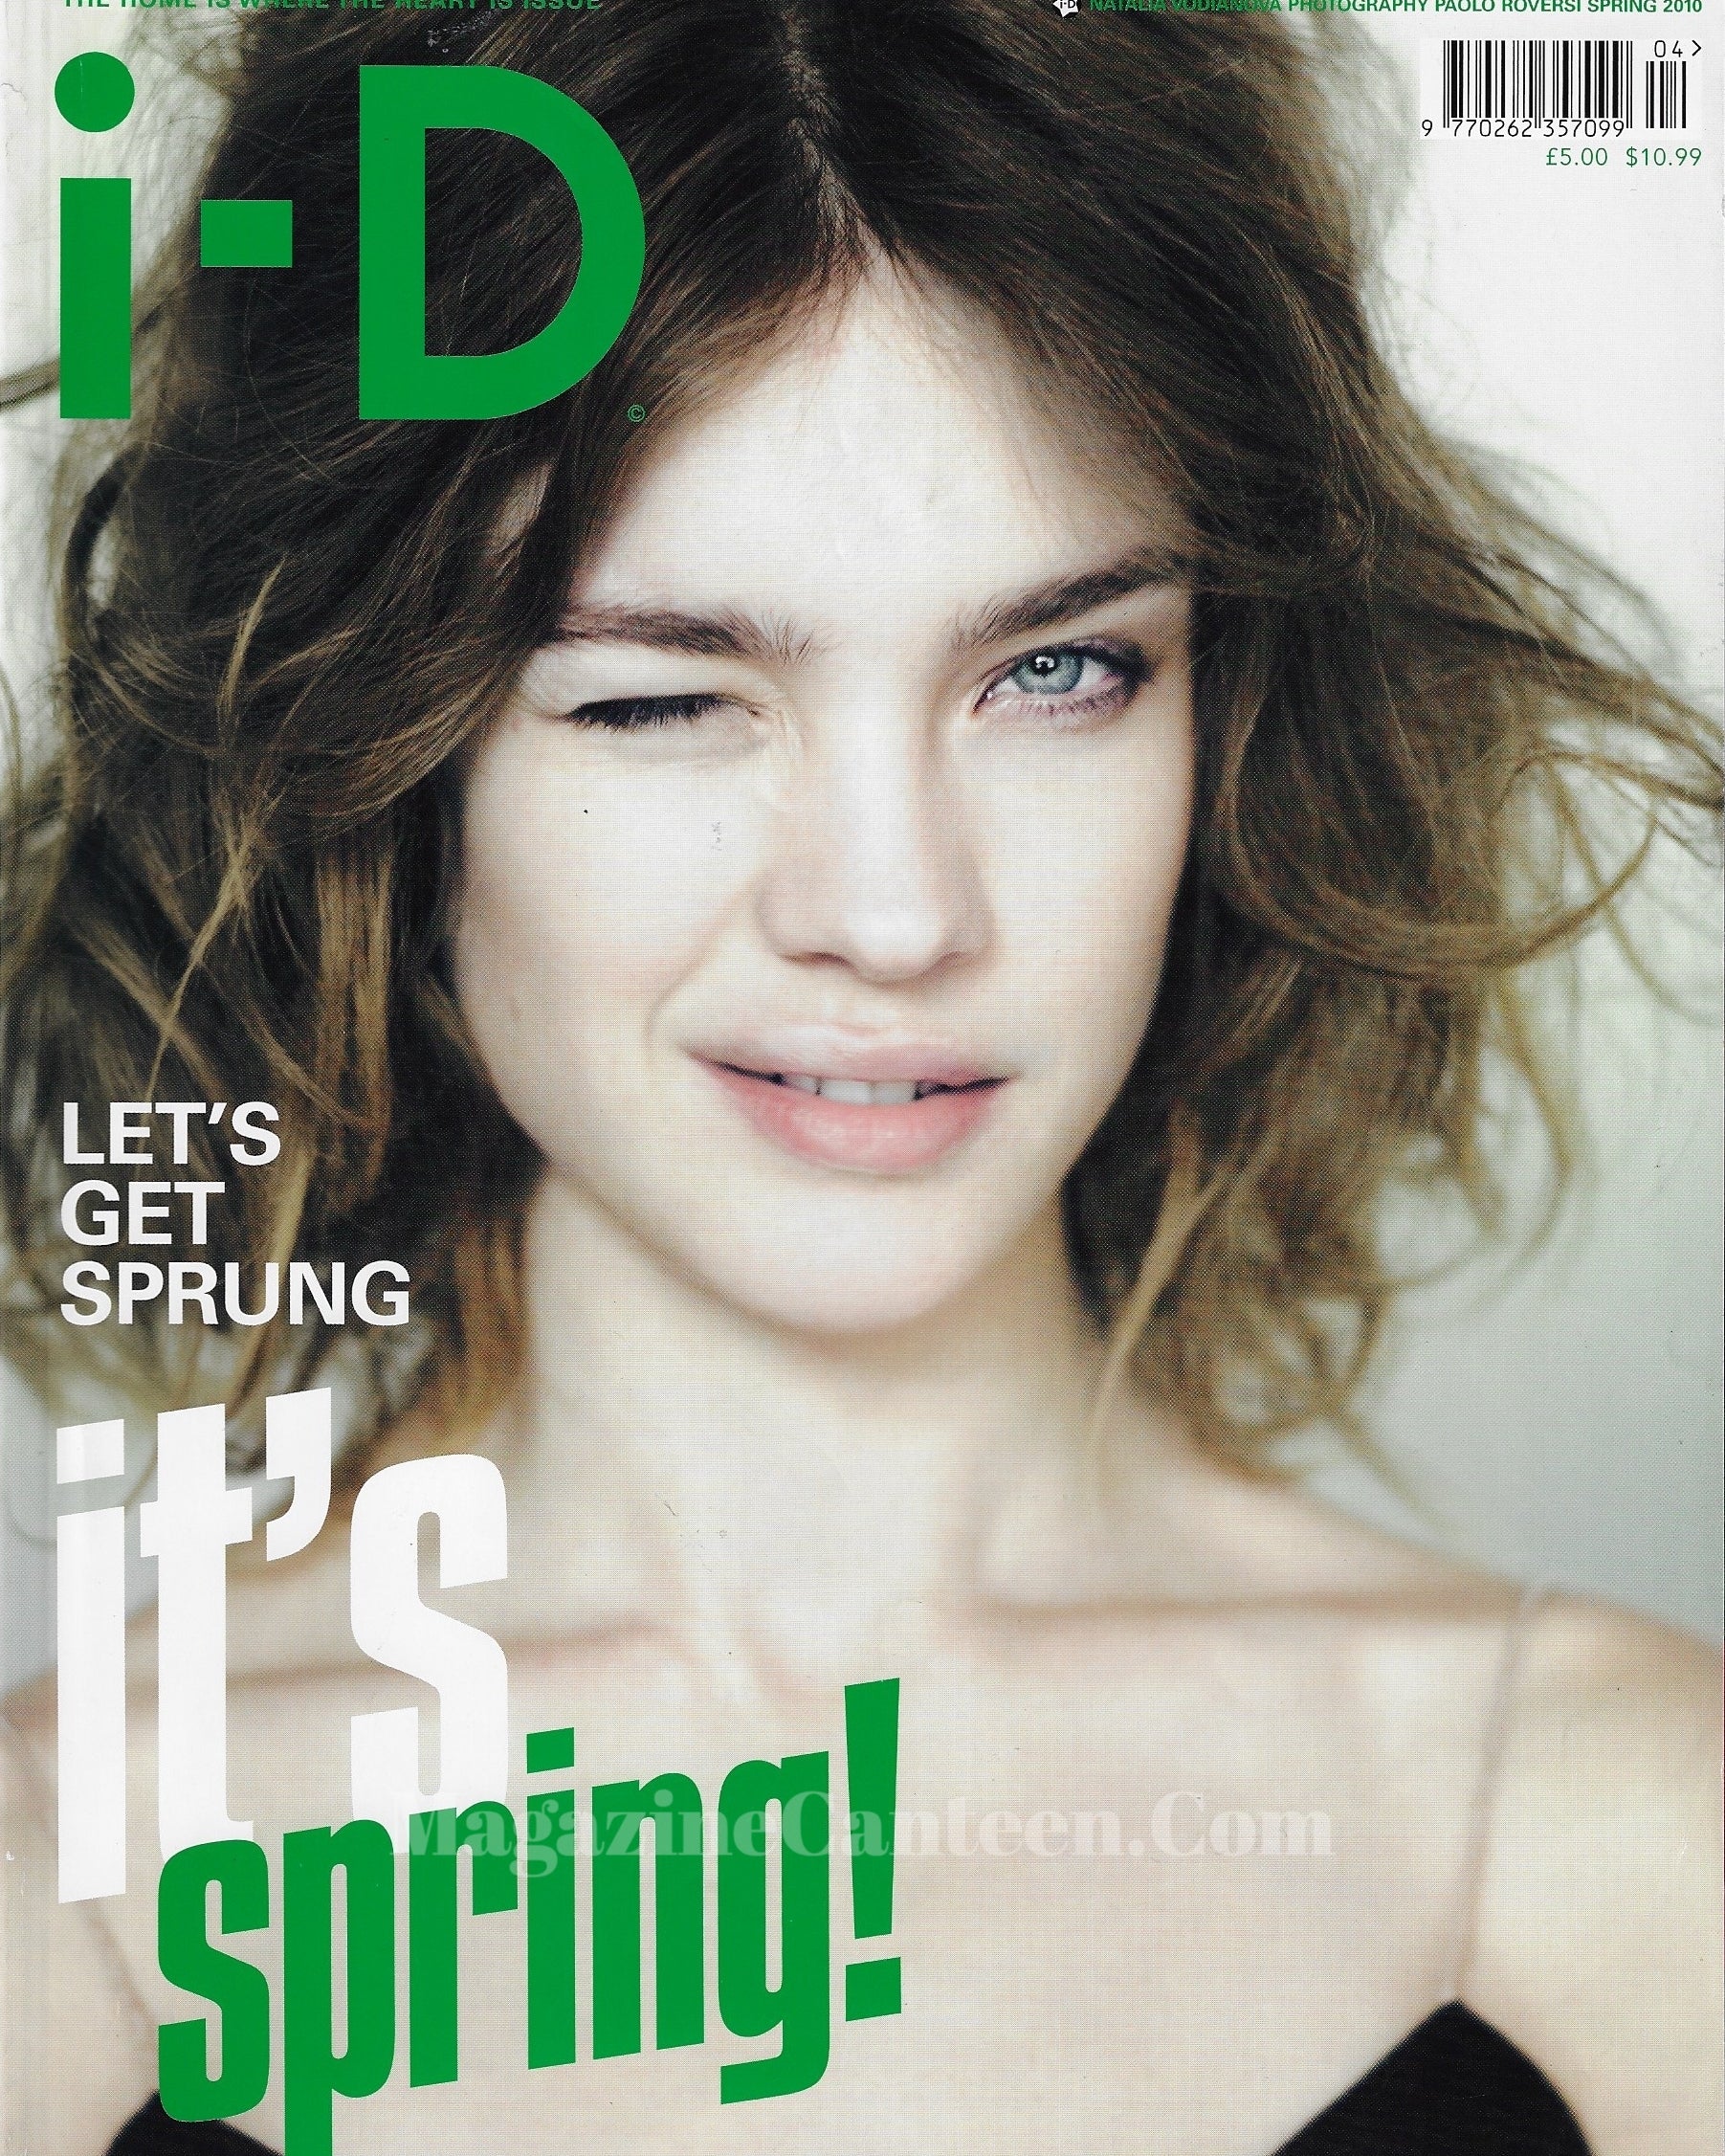 I-D Magazine 306 - Natalia Vodianova 2010